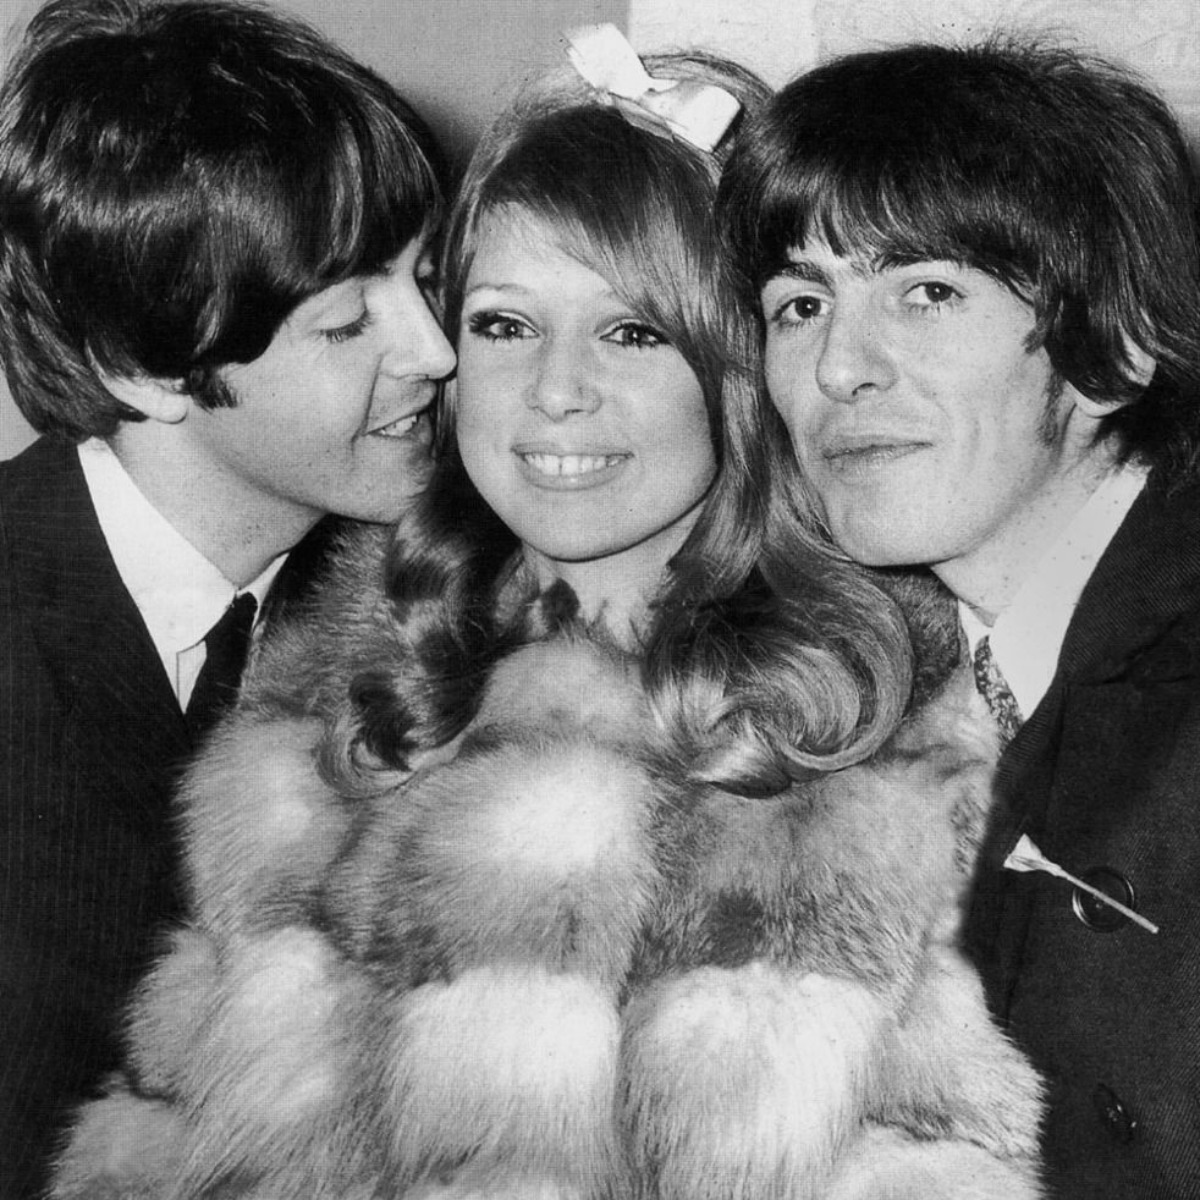 Paul McCartney, Patti Boyd, and George Harrison